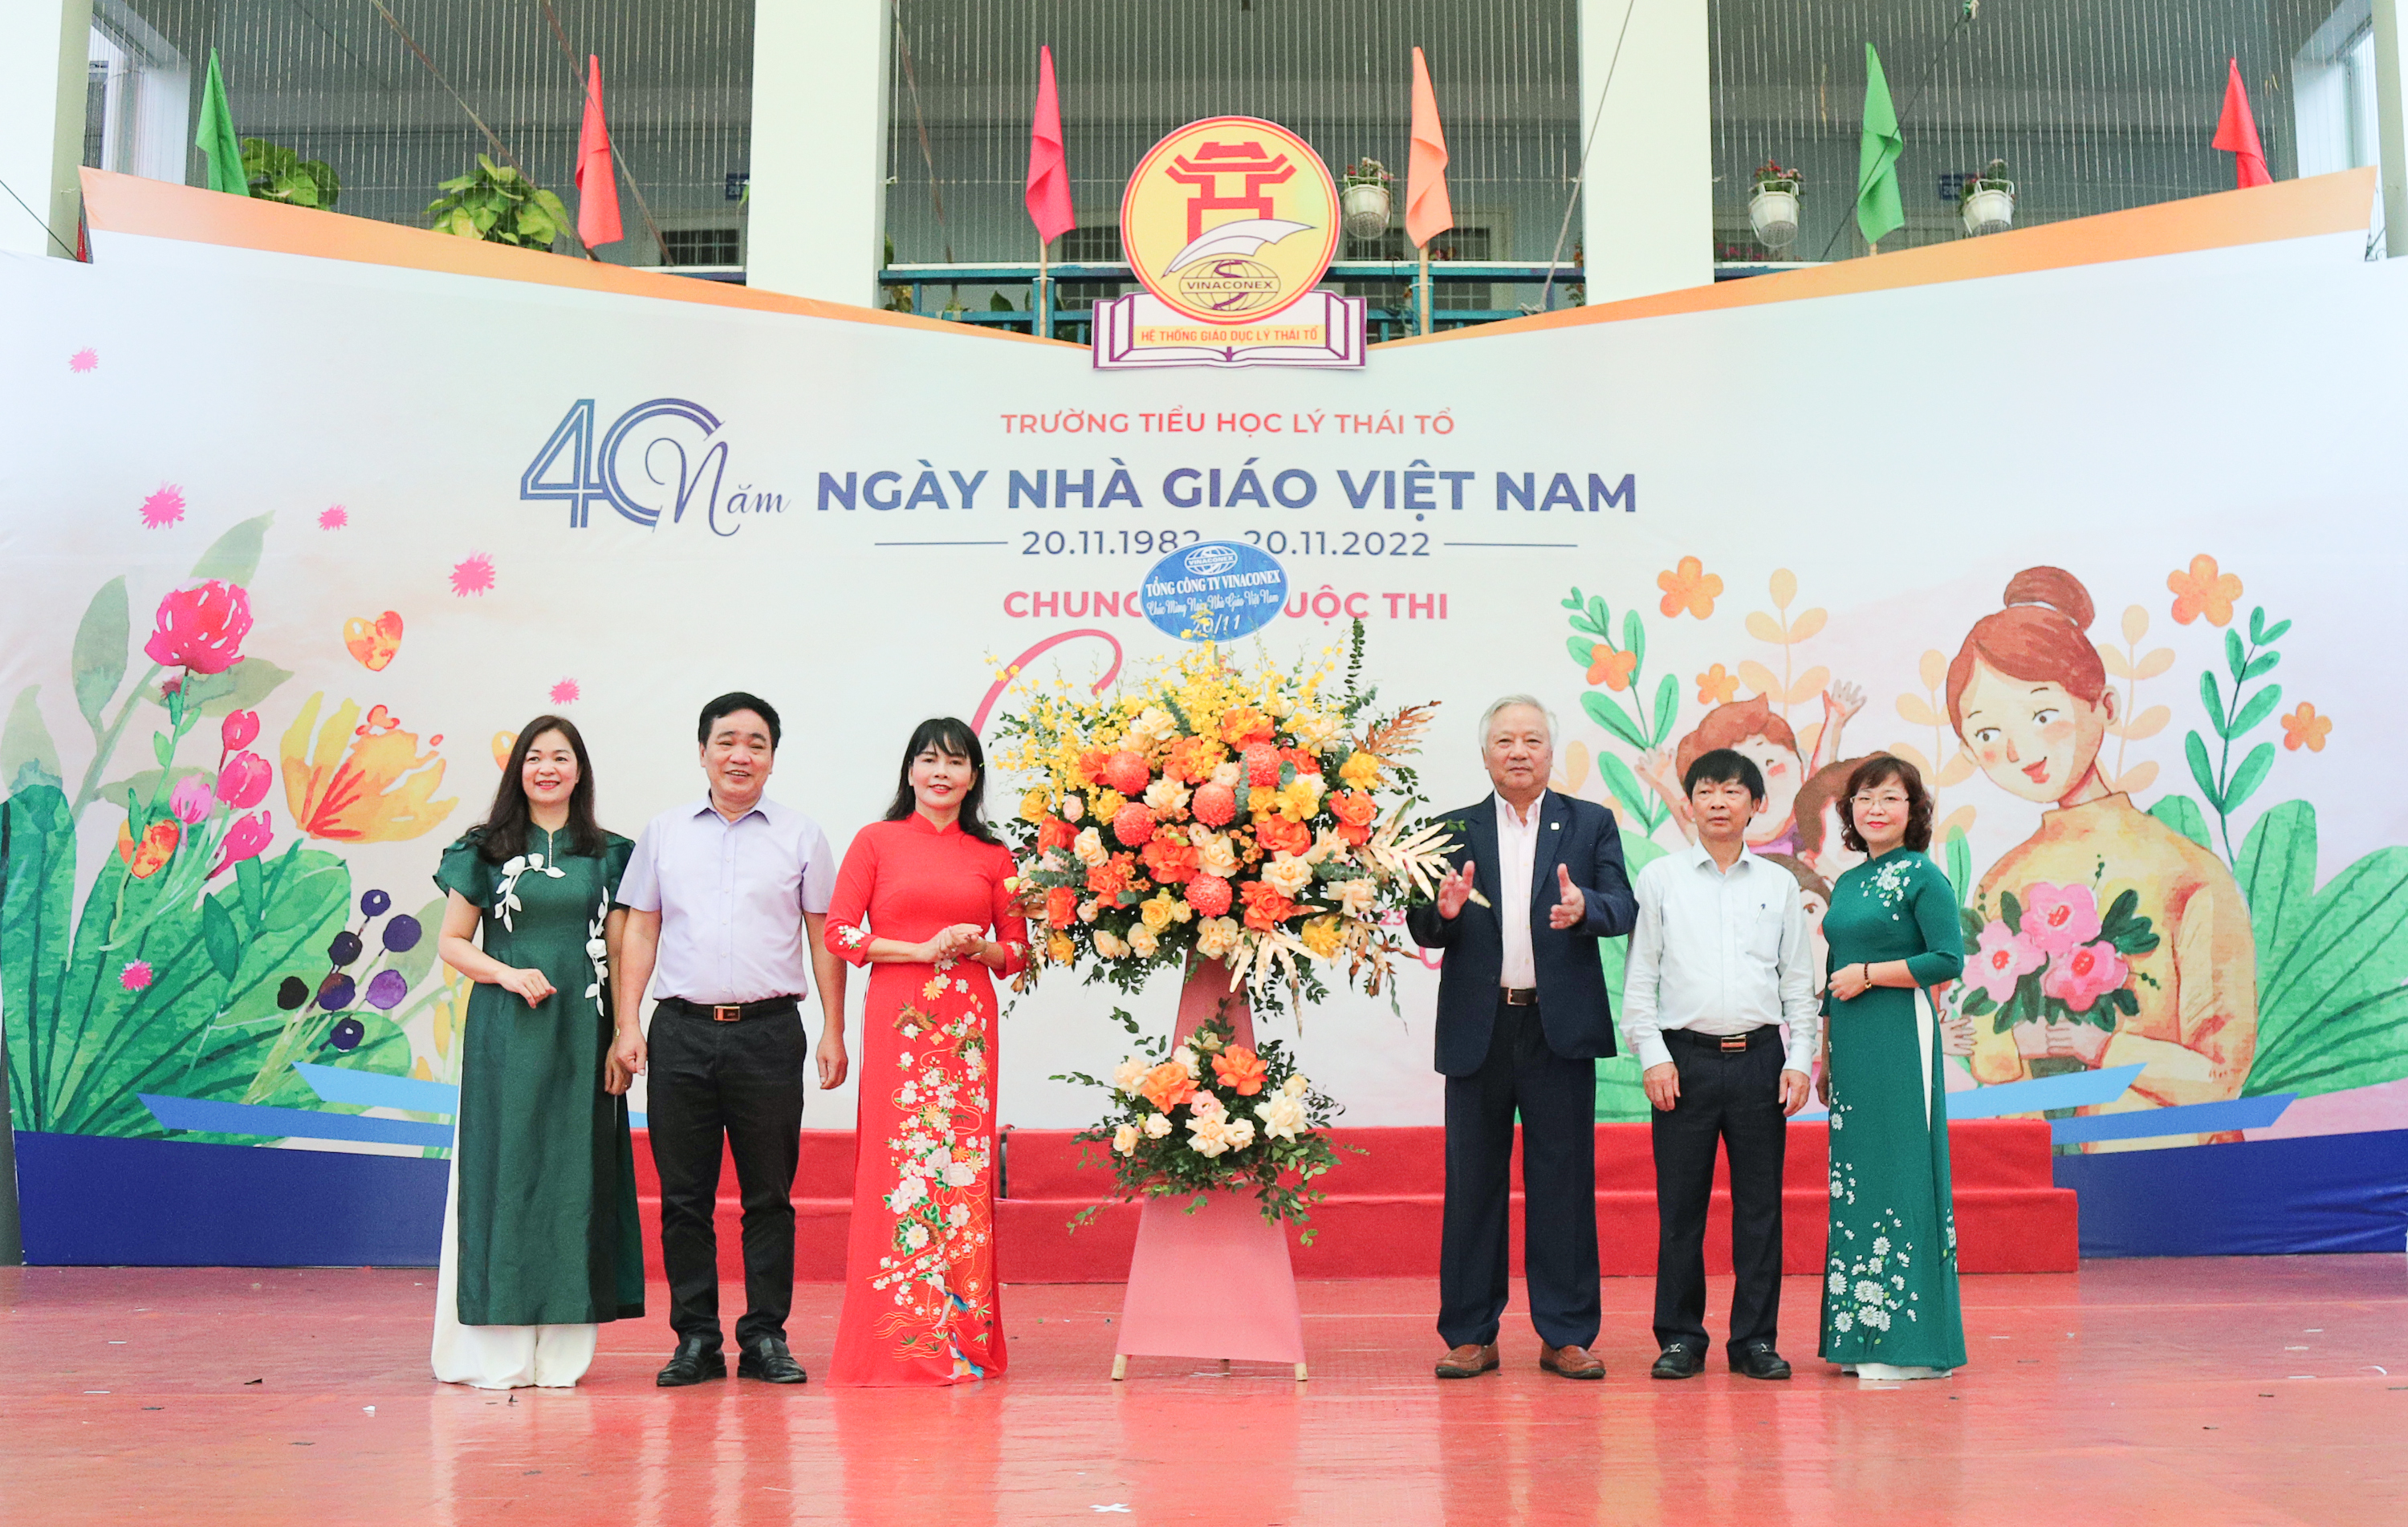 Tổng công ty CP Vinaconex chúc mừng ngày nhà giáo Việt Nam